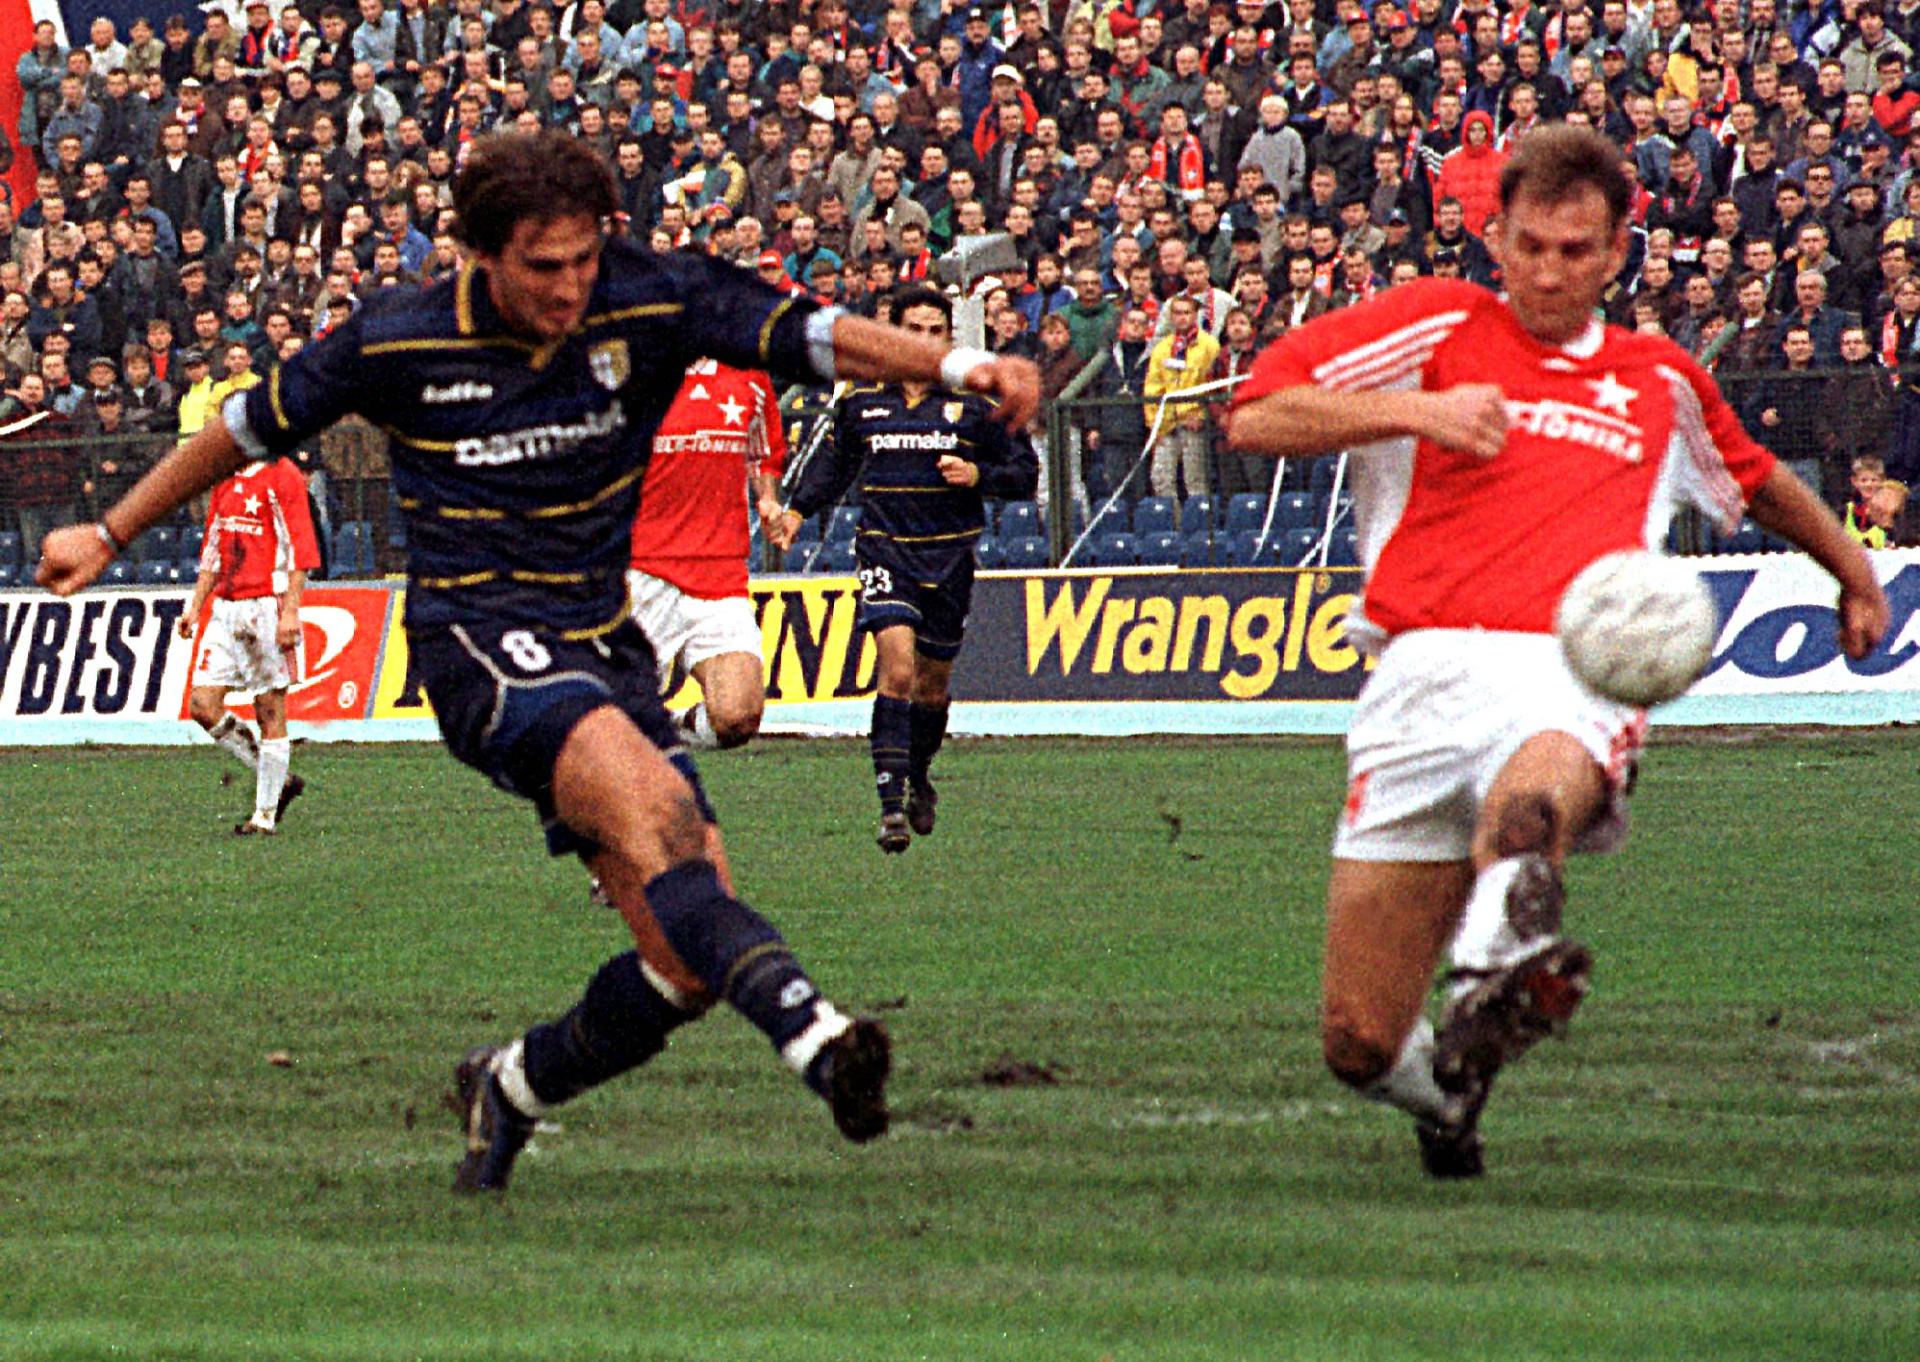 Wisła Kraków - Parma AC 1:1 (20.10.1998)